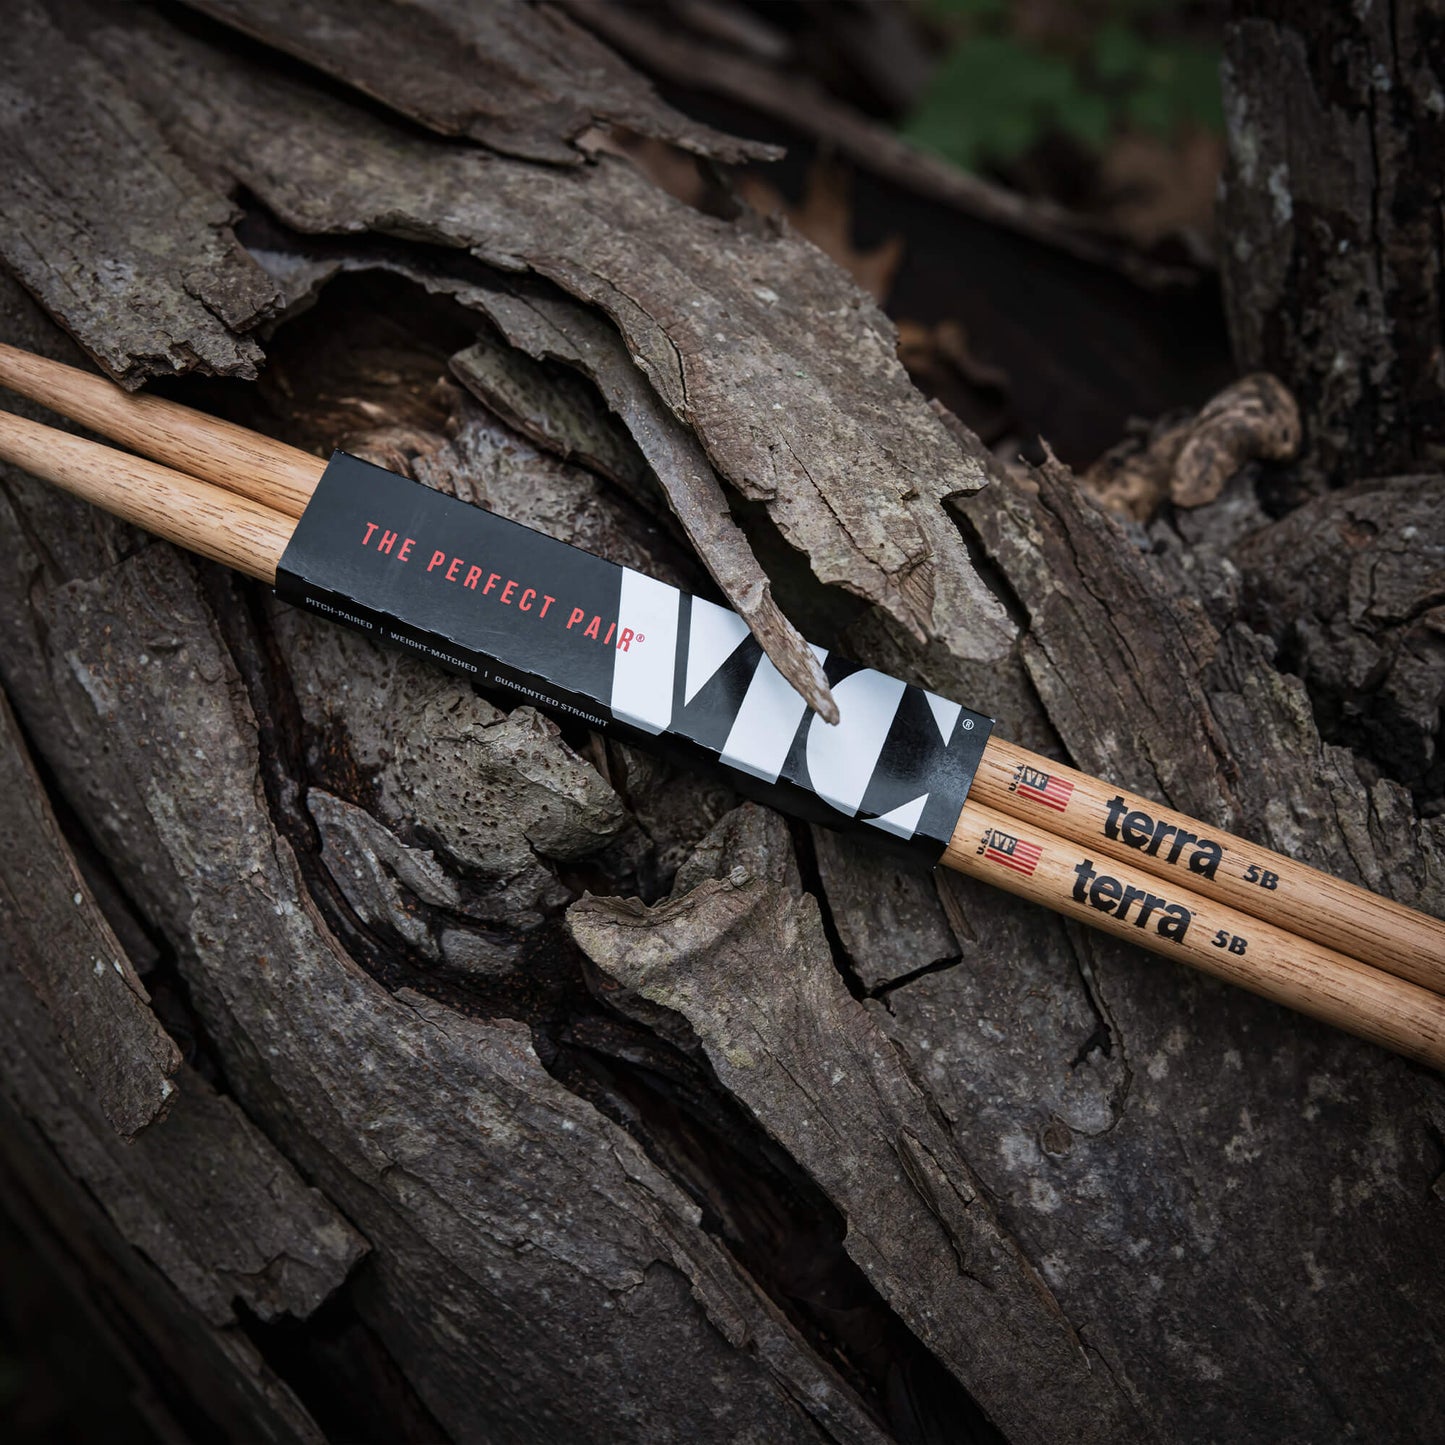 American Classic® 5BT Terra Series Drumsticks, Wood Tip